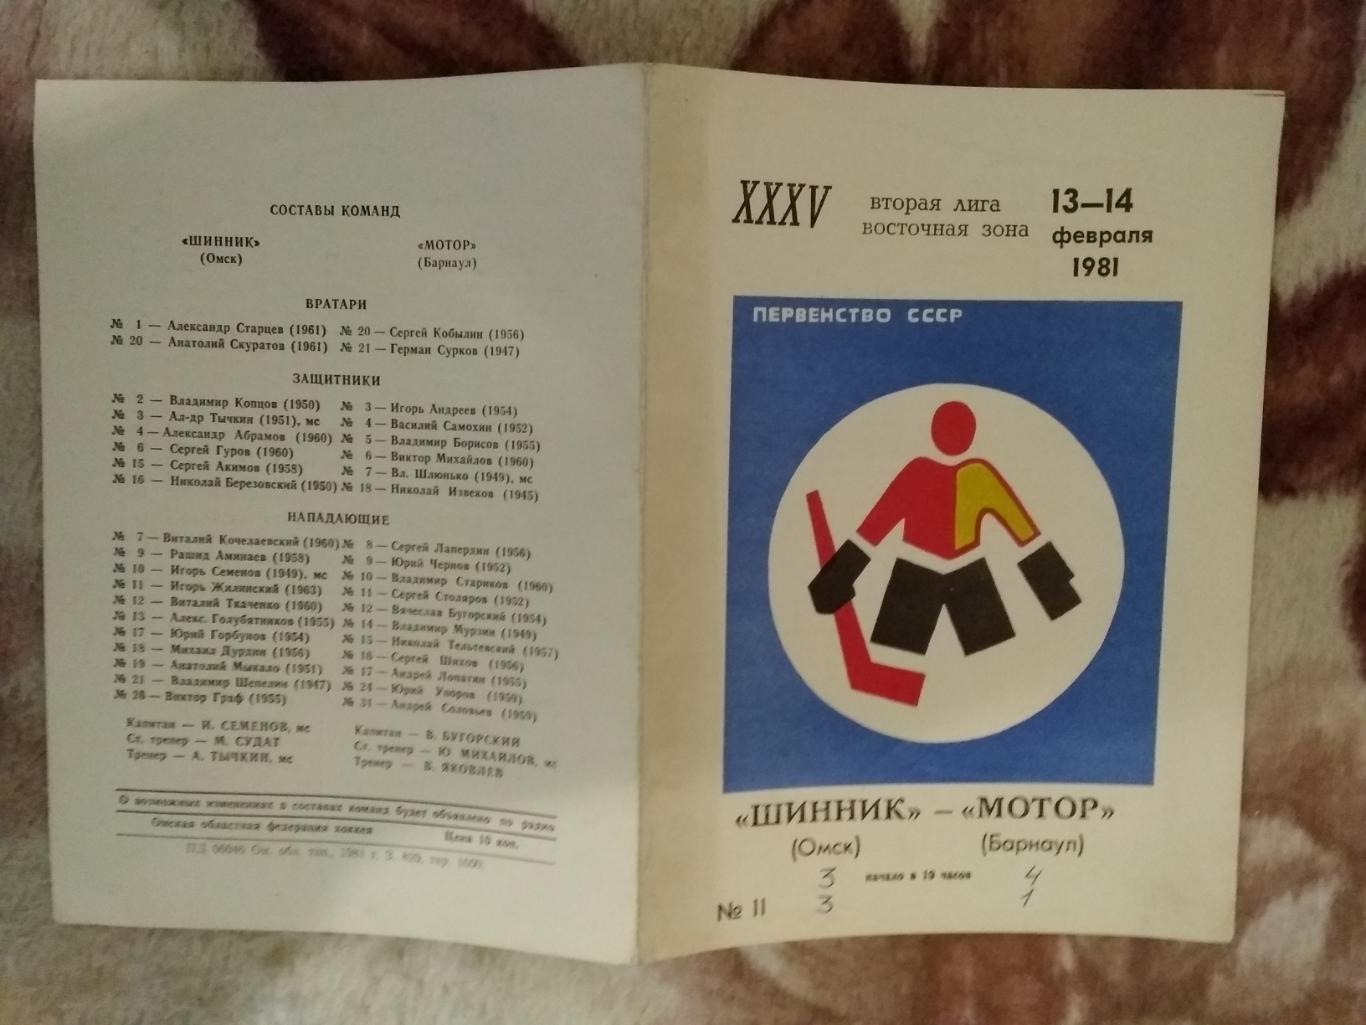 Шинник (Омск) - Мотор (Барнаул) 13-14.02.1981 г.